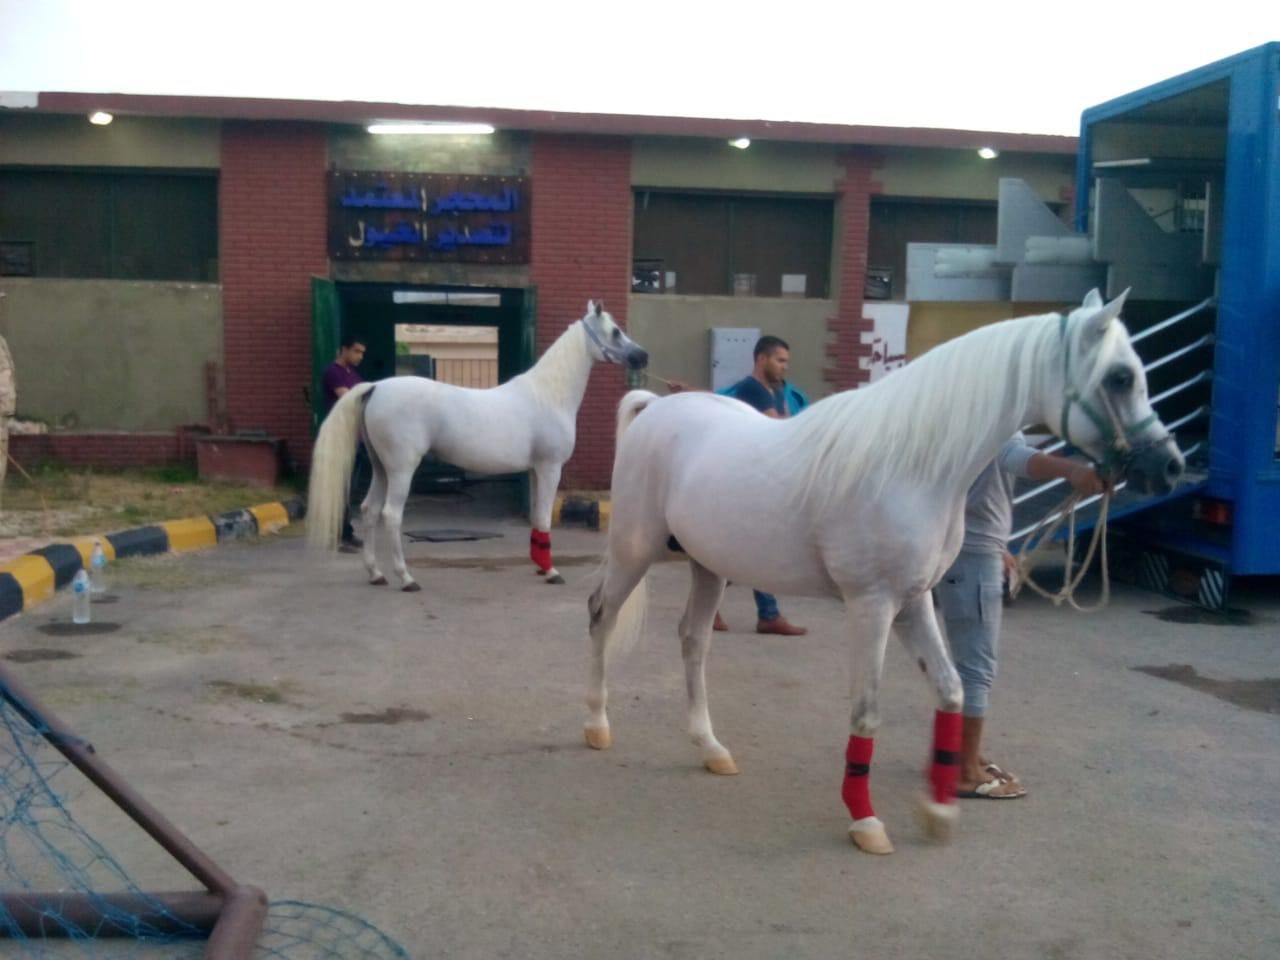   نائب وزير الزراعة: ارتفاع صادرات الخيول العربية إلى 47 حصانًا..وترتيب منظومة الخيول أولوية التطوير